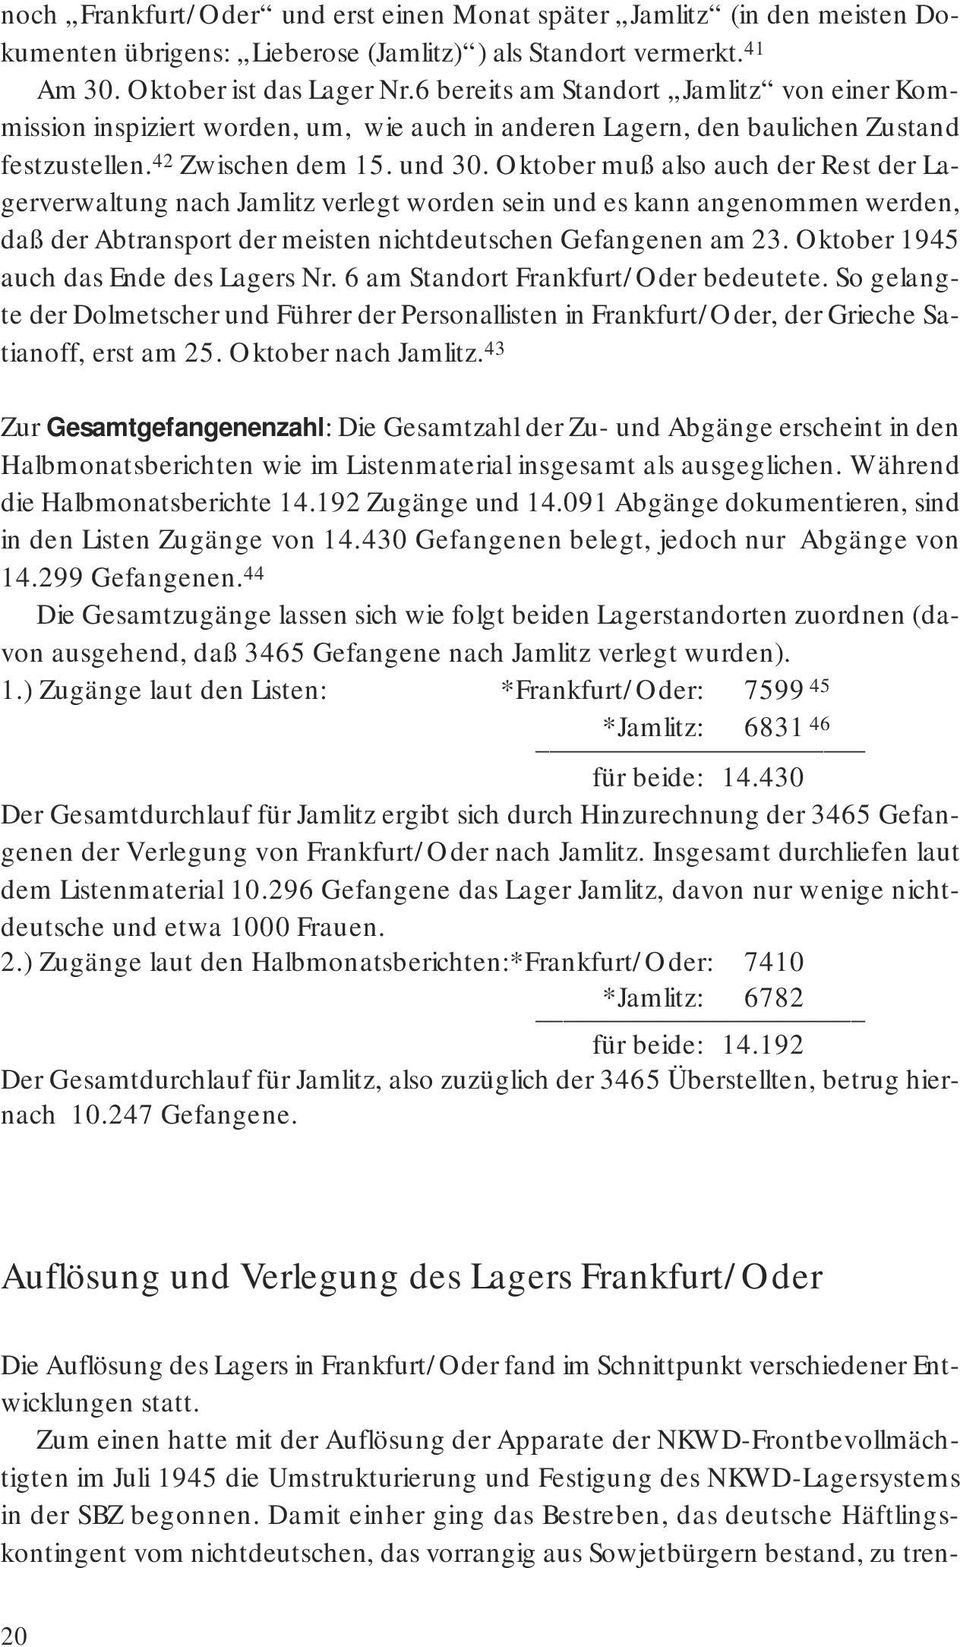 Oktober muß also auch der Rest der Lagerverwaltung nach Jamlitz verlegt worden sein und es kann angenommen werden, daß der Abtransport der meisten nichtdeutschen Gefangenen am 23.